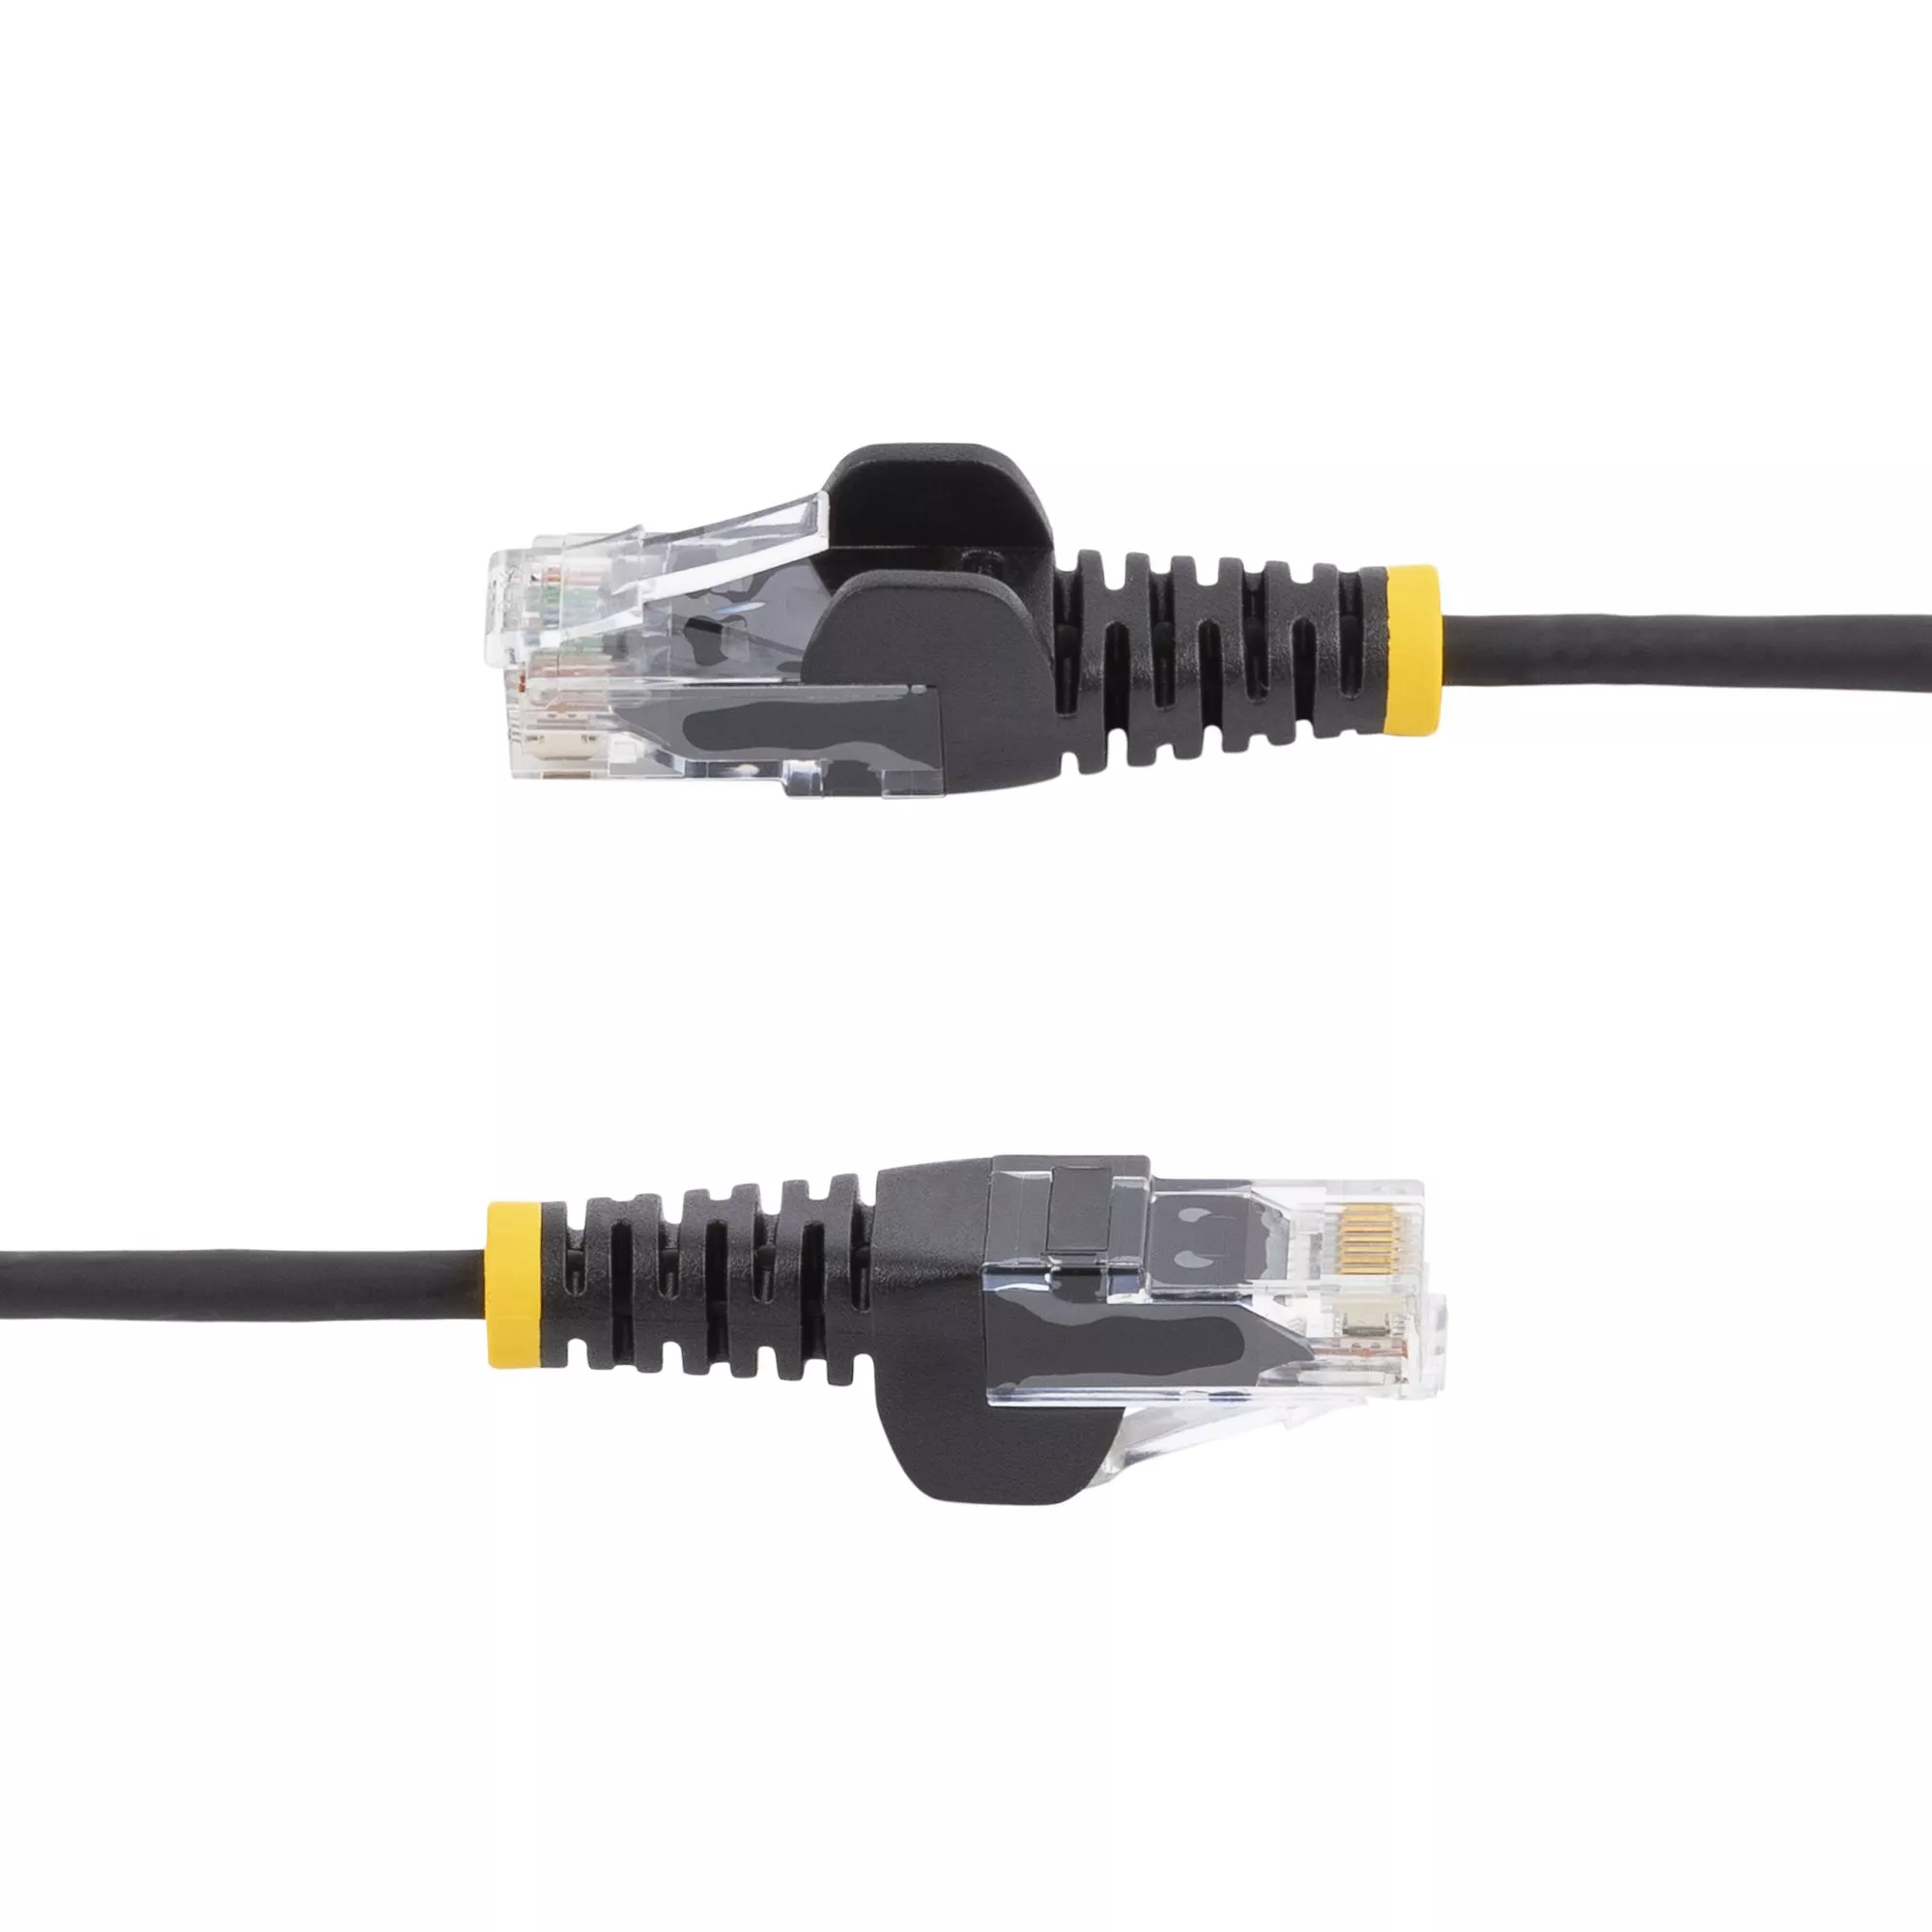 Achat StarTech.com Câble réseau Ethernet RJ45 Cat6 de 3 sur hello RSE - visuel 3